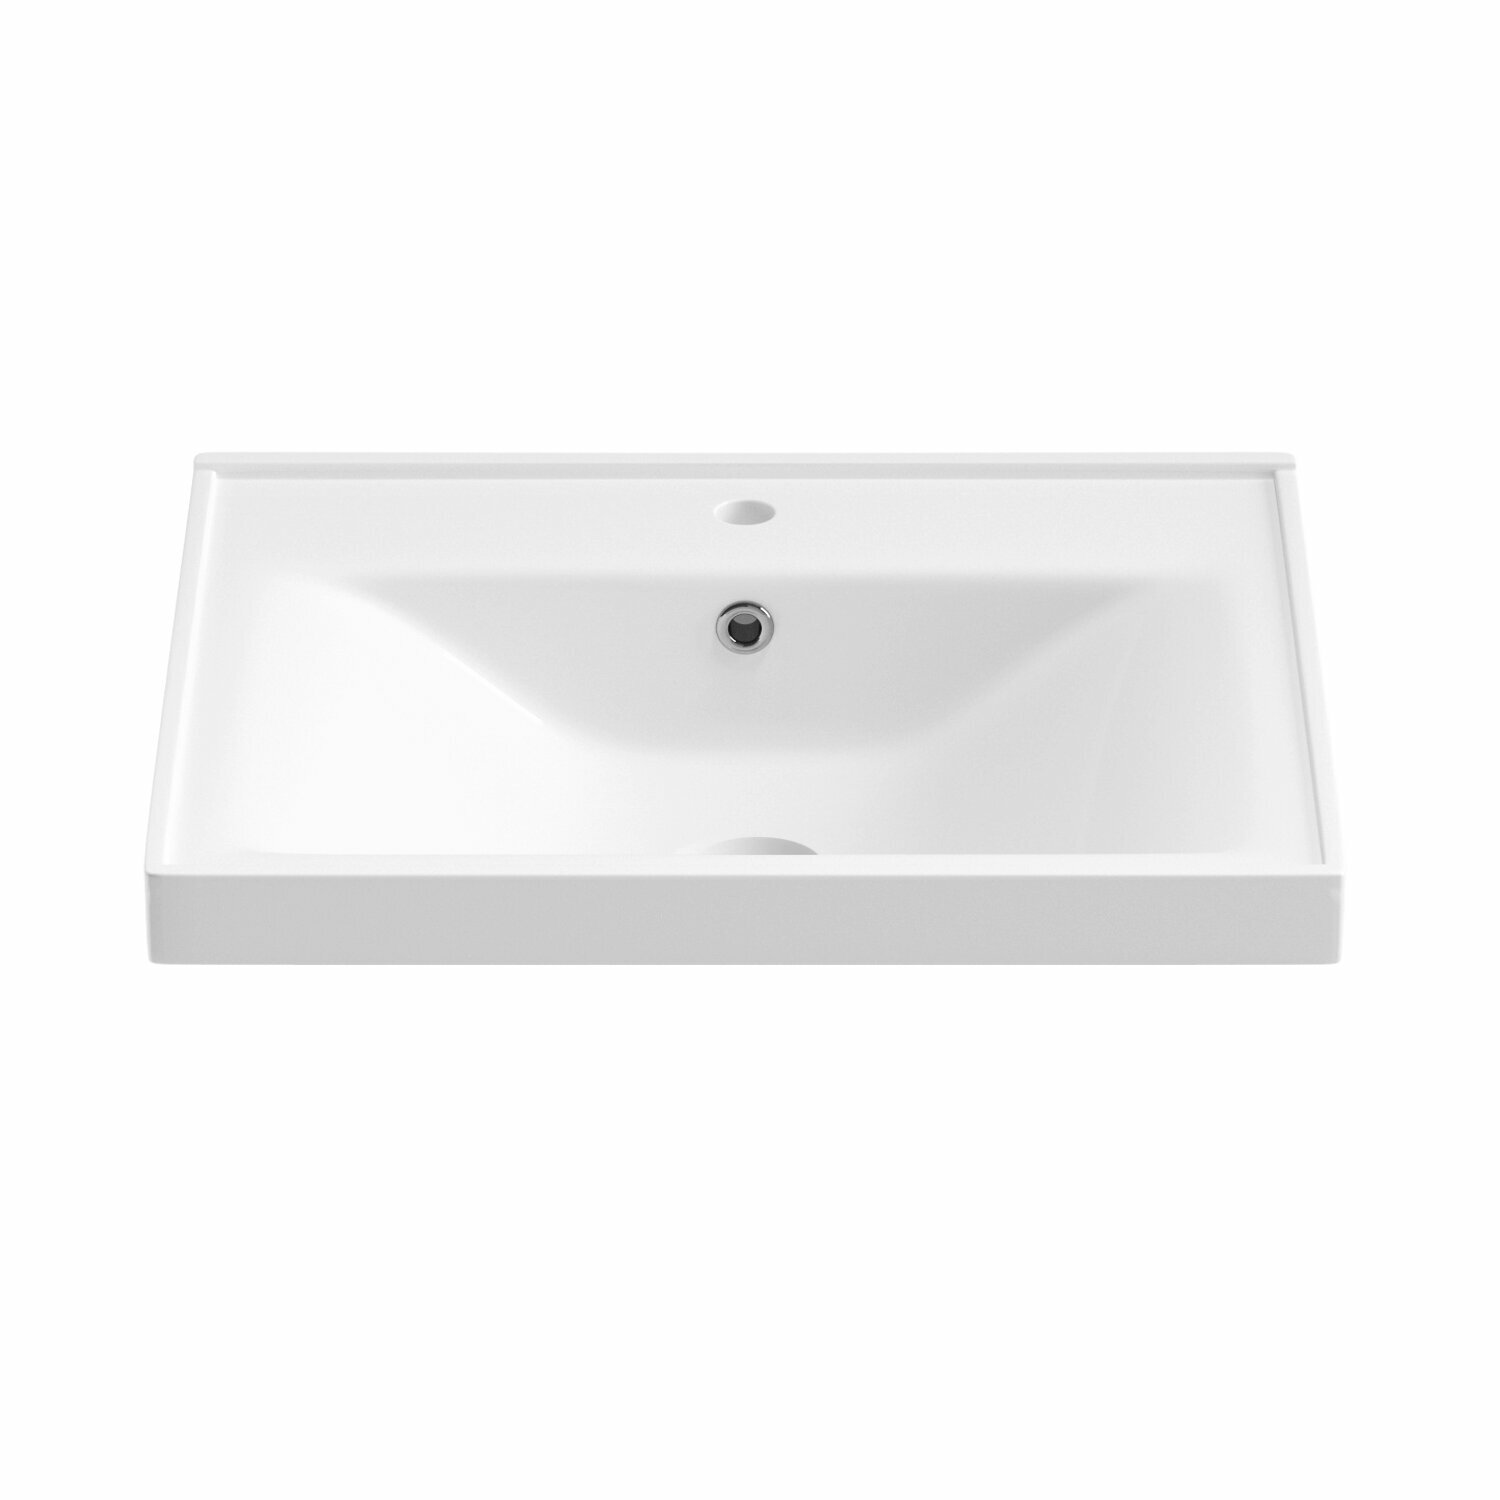 Подвесная/мебельная раковина для ванной комнаты Wellsee FreeDom 151101000, размер умывальника 50*38 см, цвет глянцевый белый